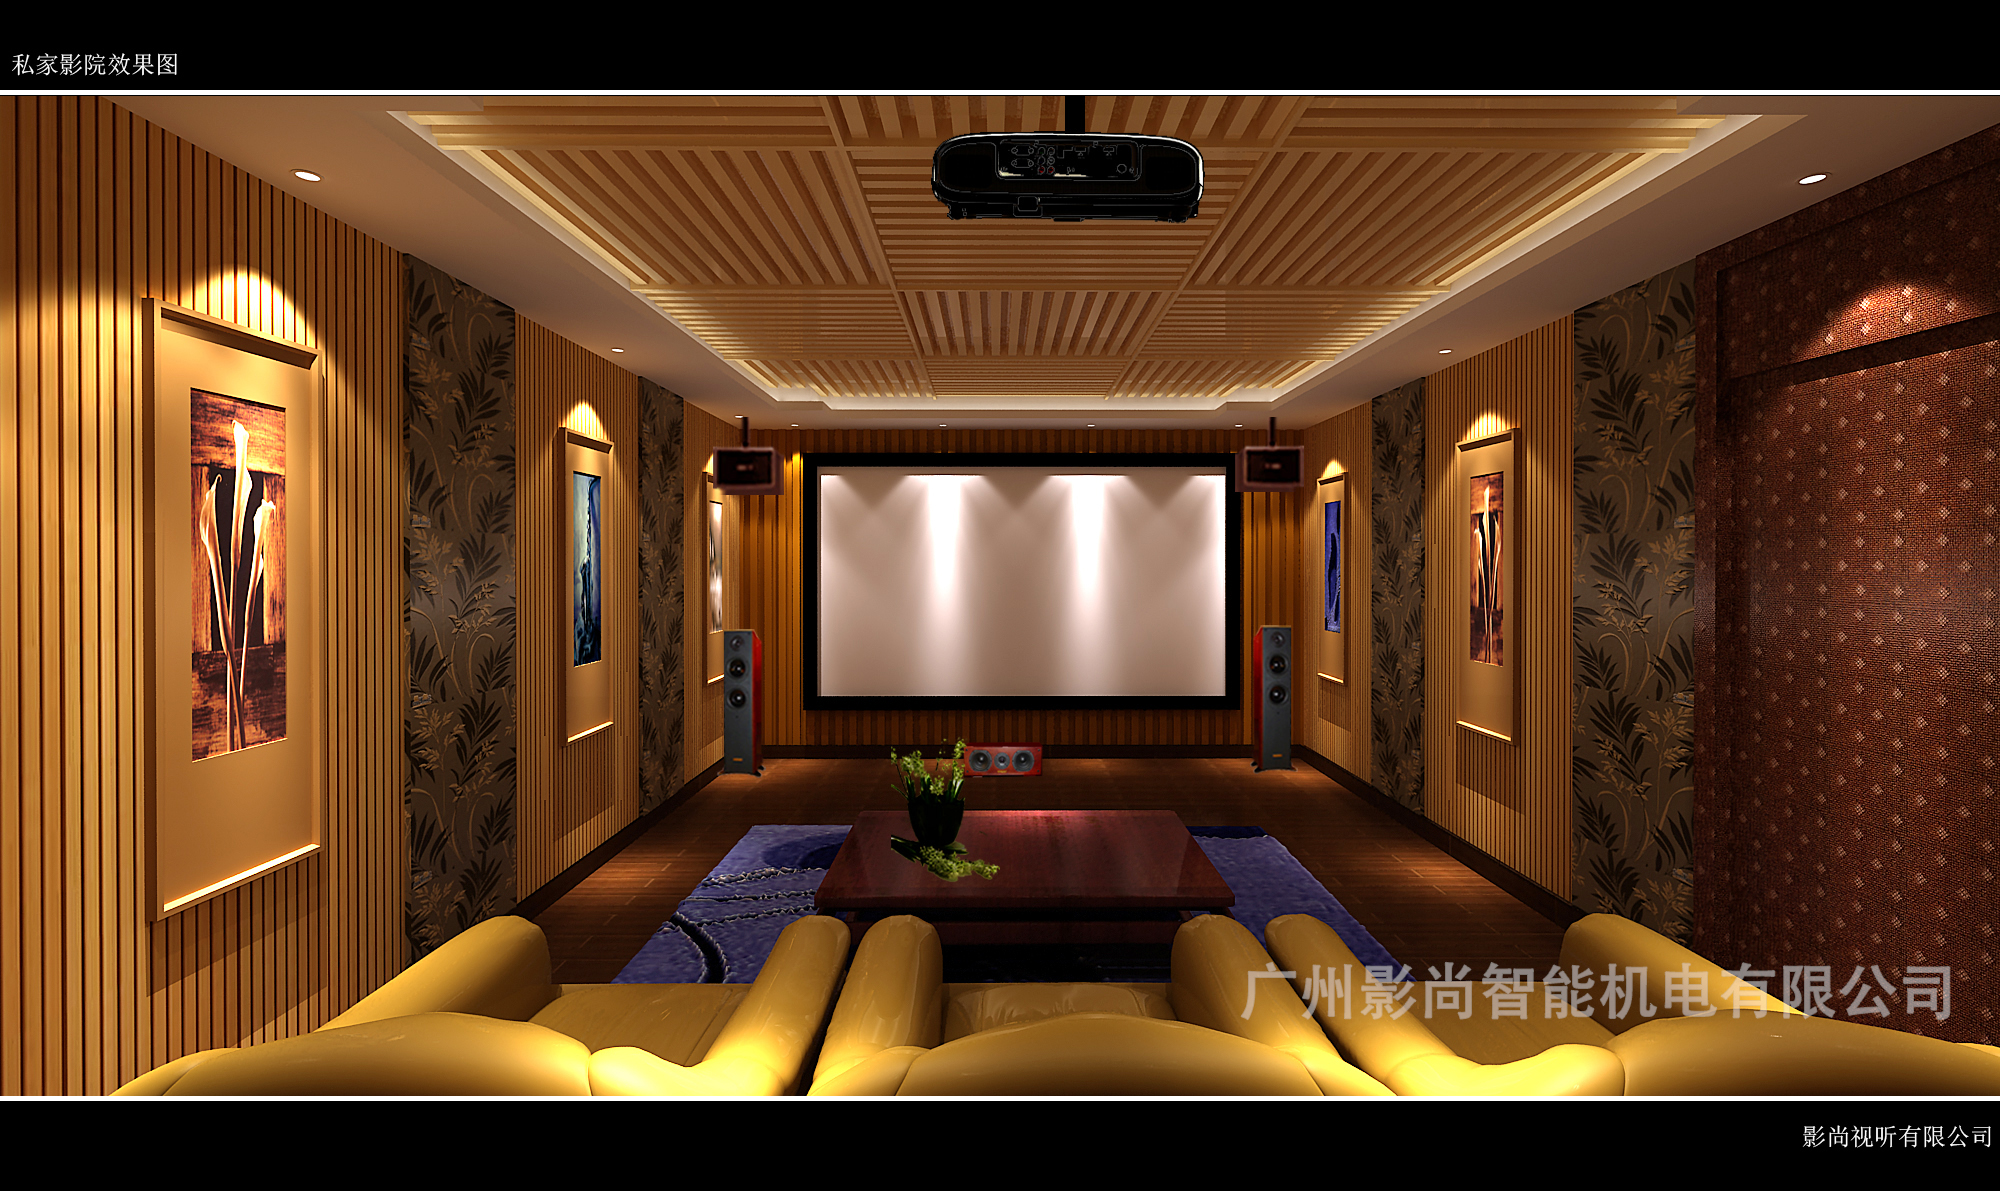 天宸原著5.1.2全景声家庭影院和2.0KTV系统装修设计案例